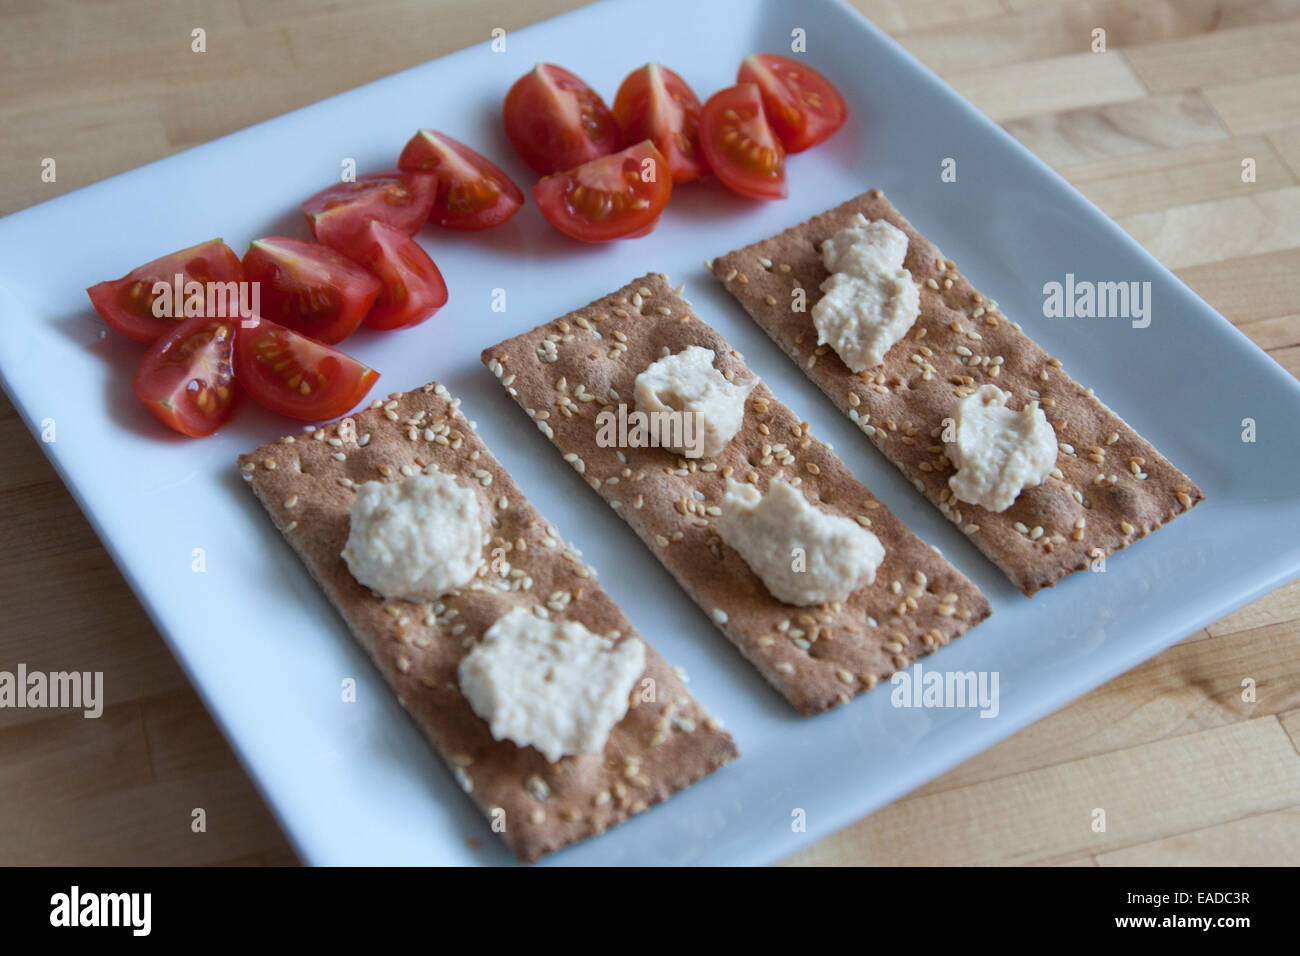 Semplice snack di ak-mak crackers, humus e fette di pomodori ciliegia su una piastra quadrata. Foto Stock